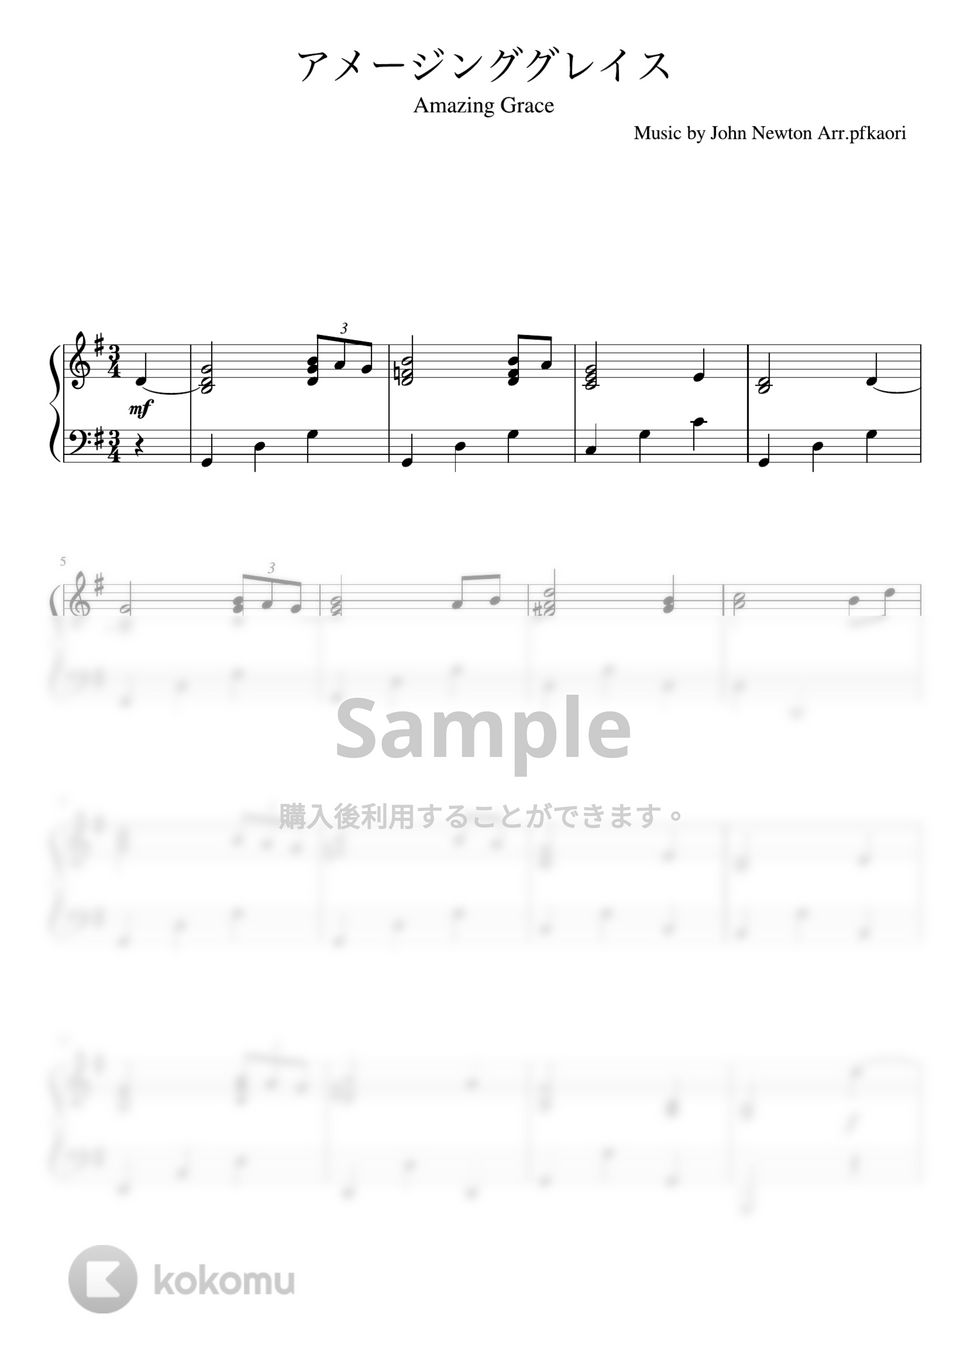 ジョン・ニュートン - アメージンググレイス (ピアノソロ初〜中級) by pfkaori